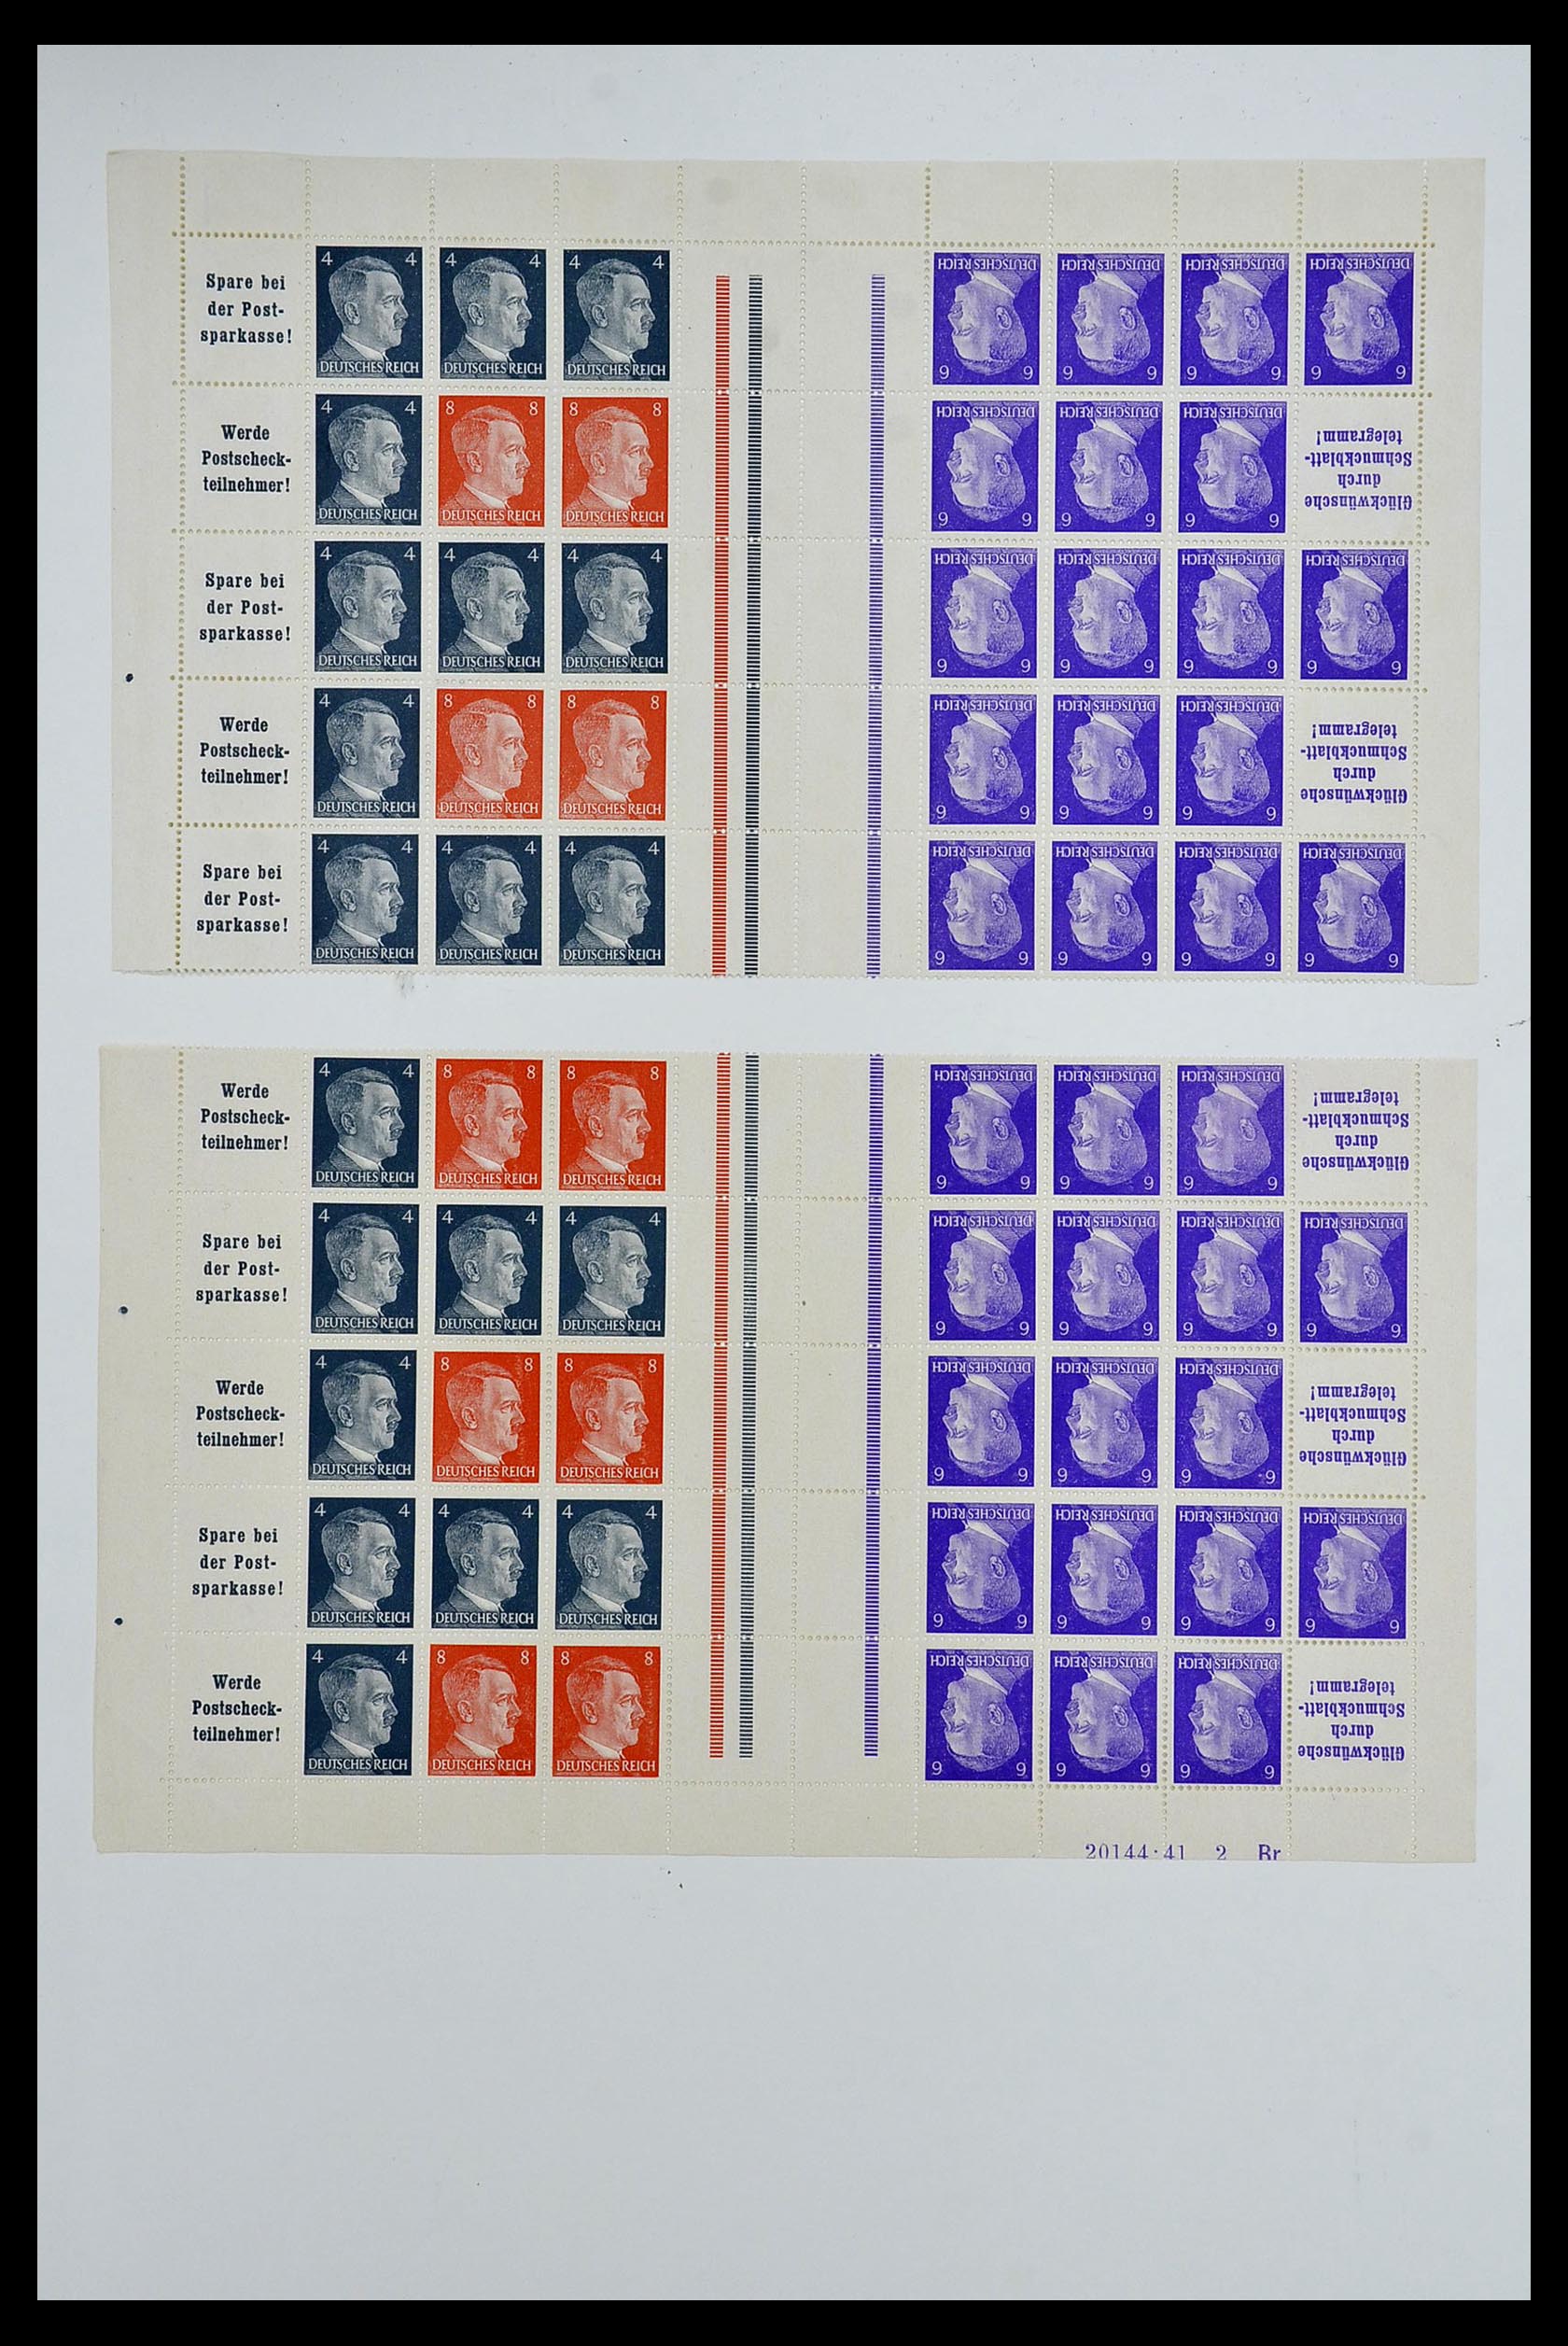 34164 077 - Stamp collection 34164 German Reich Markenheftchenbogen 1933-1942.